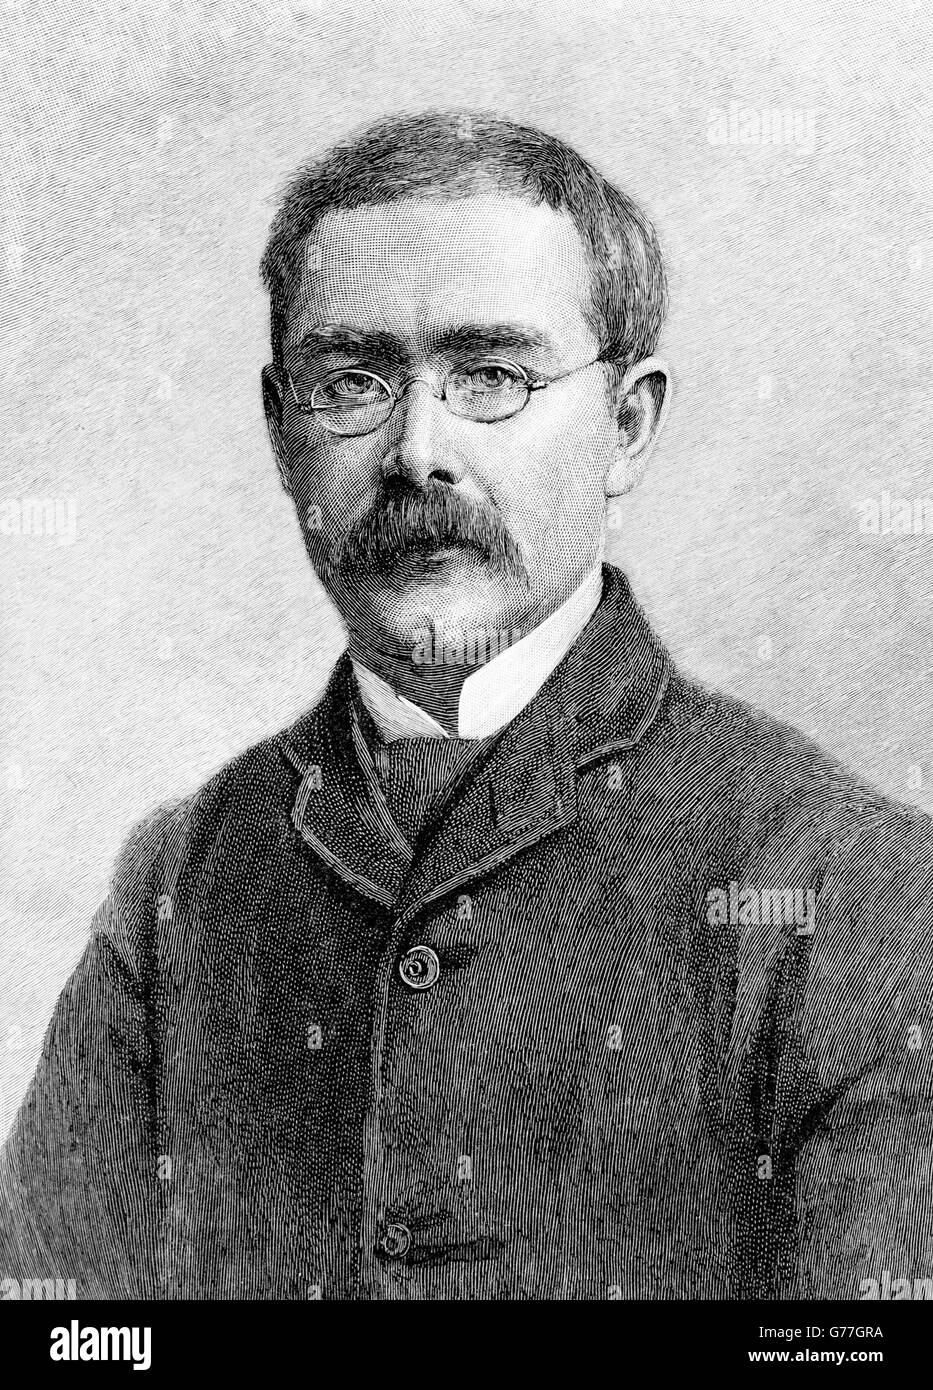 Ritratto dello scrittore inglese, Rudyard Kipling. Incisione di T. Johnson da una fotografia di Elliott & Fry, c.1891. Foto Stock